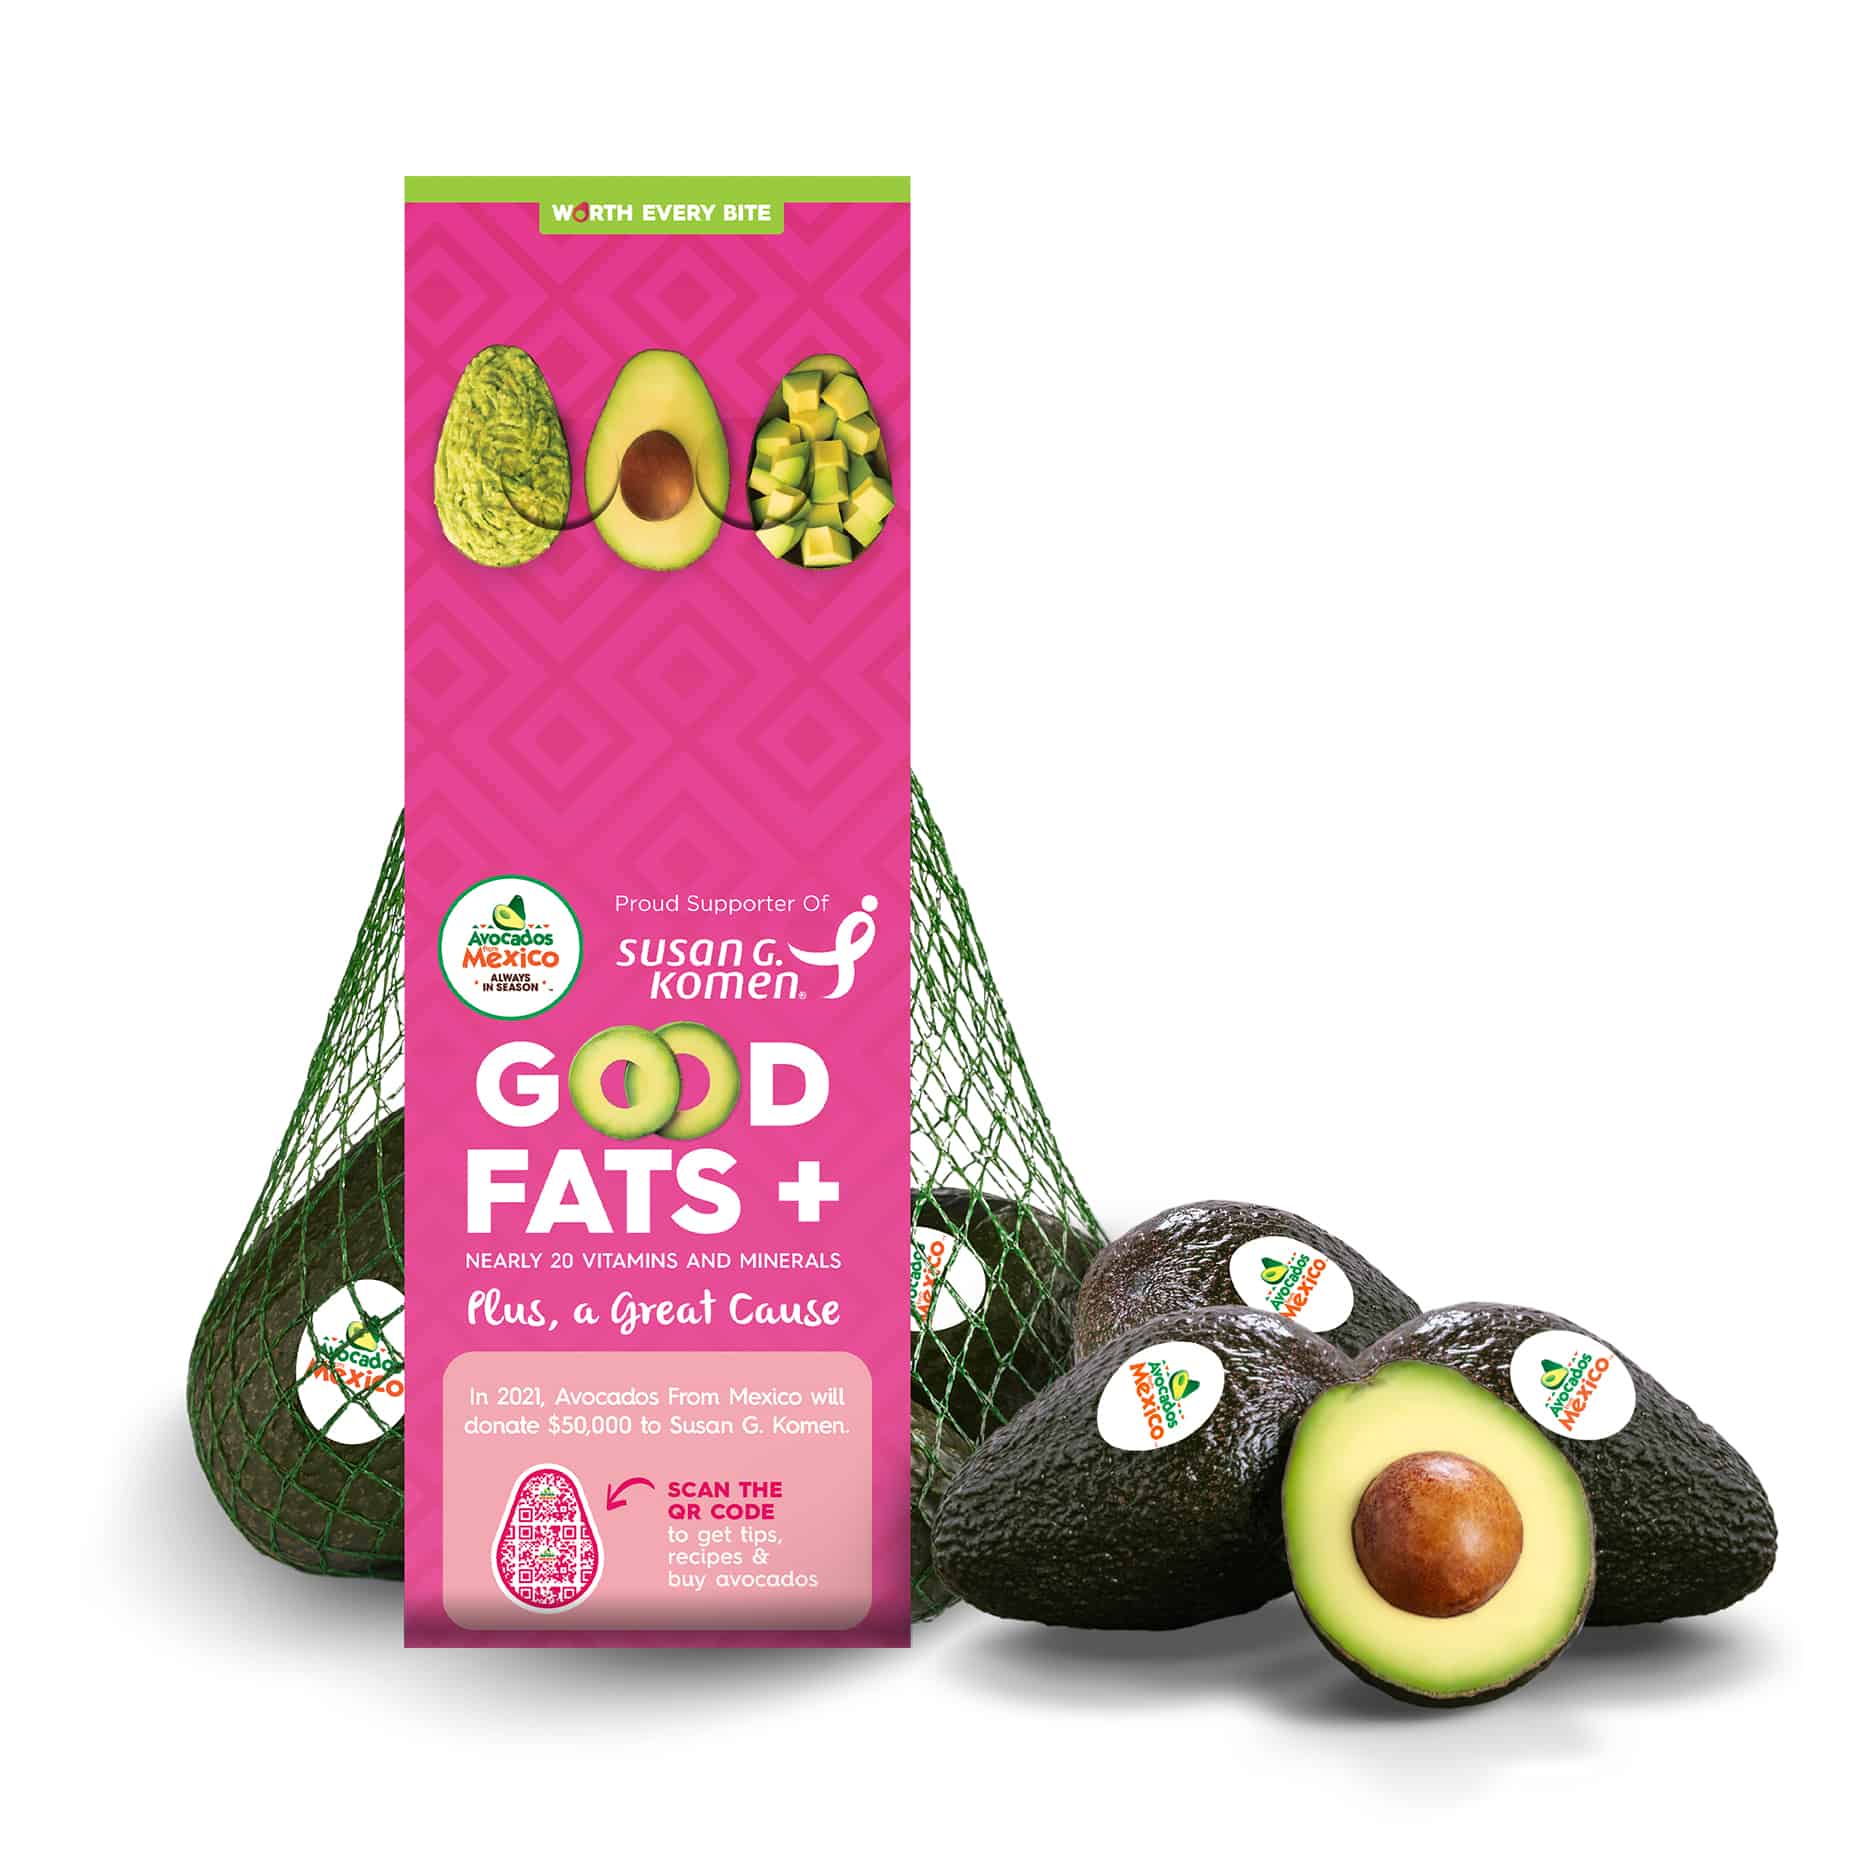 Bag of avocados